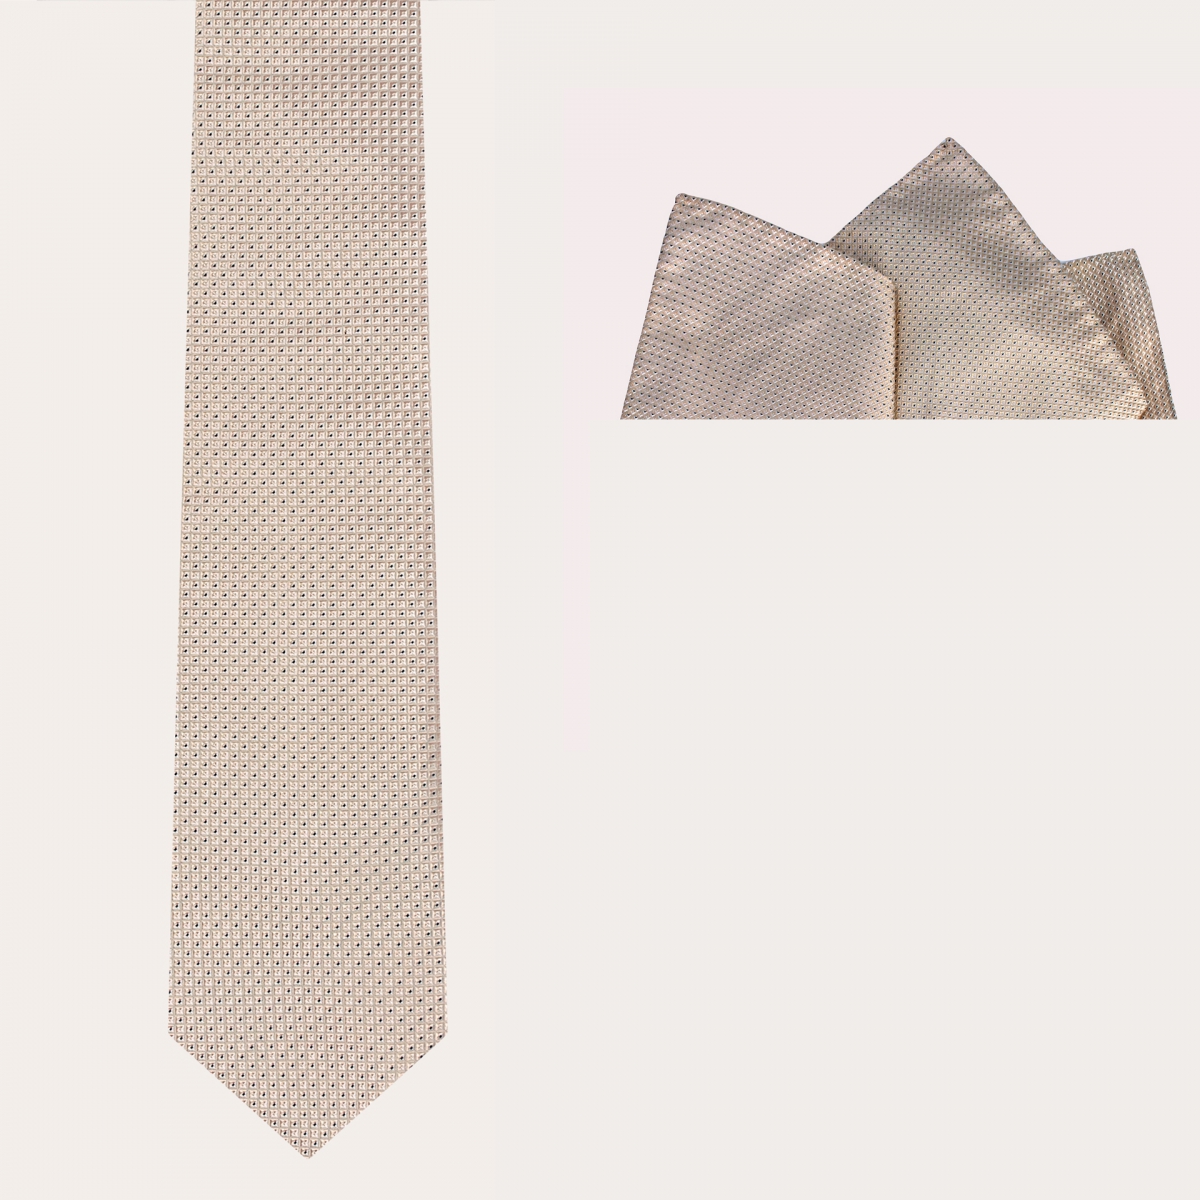 BRUCLE Ensemble de cérémonie cravate et pochette, Ivoire blanc avec micro motif bleu